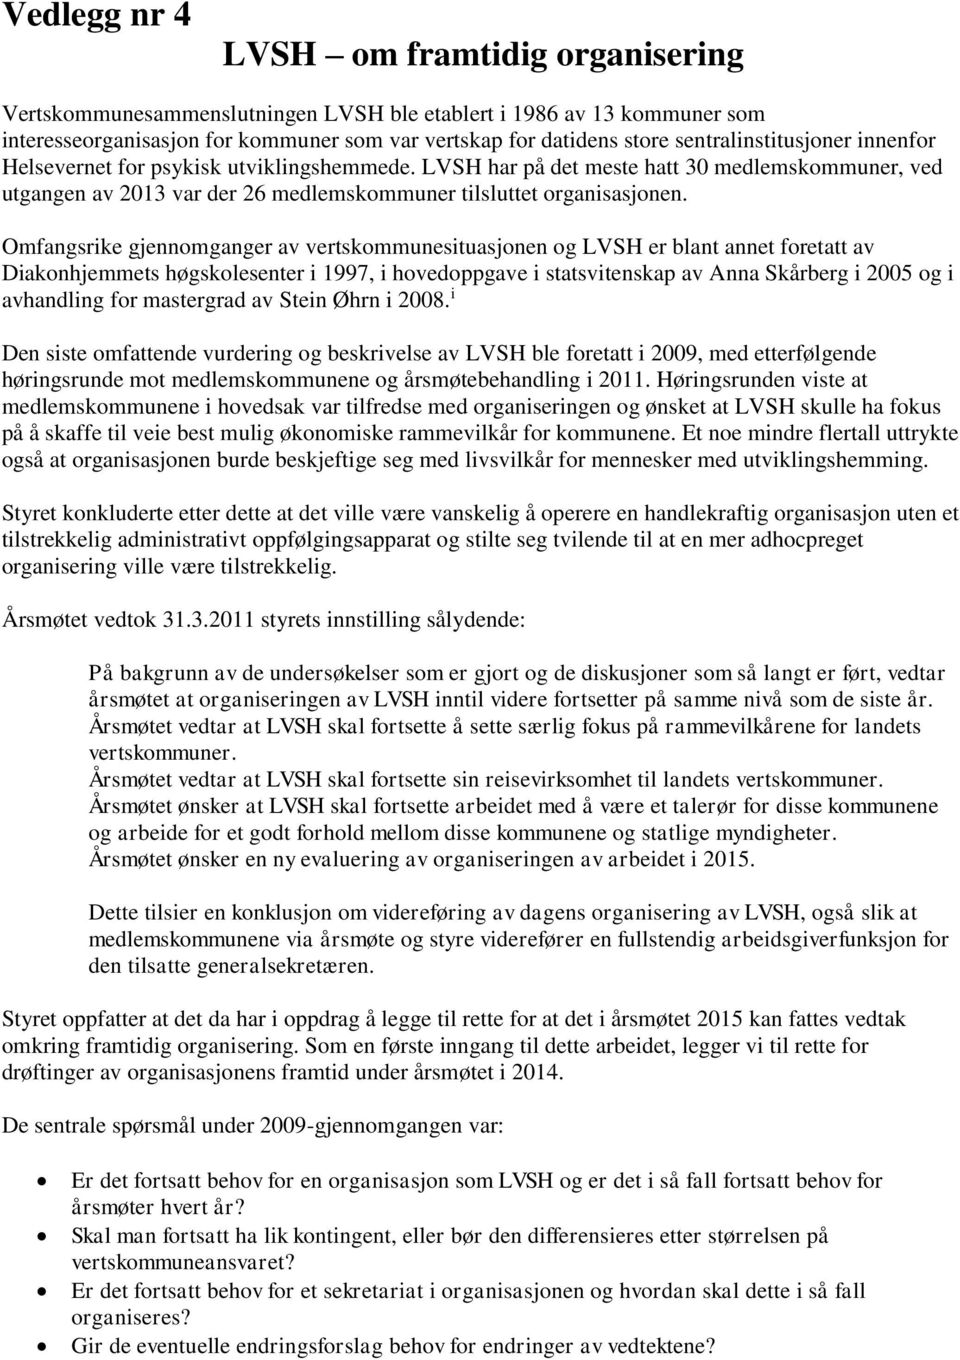 Omfangsrike gjennomganger av vertskommunesituasjonen og LVSH er blant annet foretatt av Diakonhjemmets høgskolesenter i 1997, i hovedoppgave i statsvitenskap av Anna Skårberg i 2005 og i avhandling